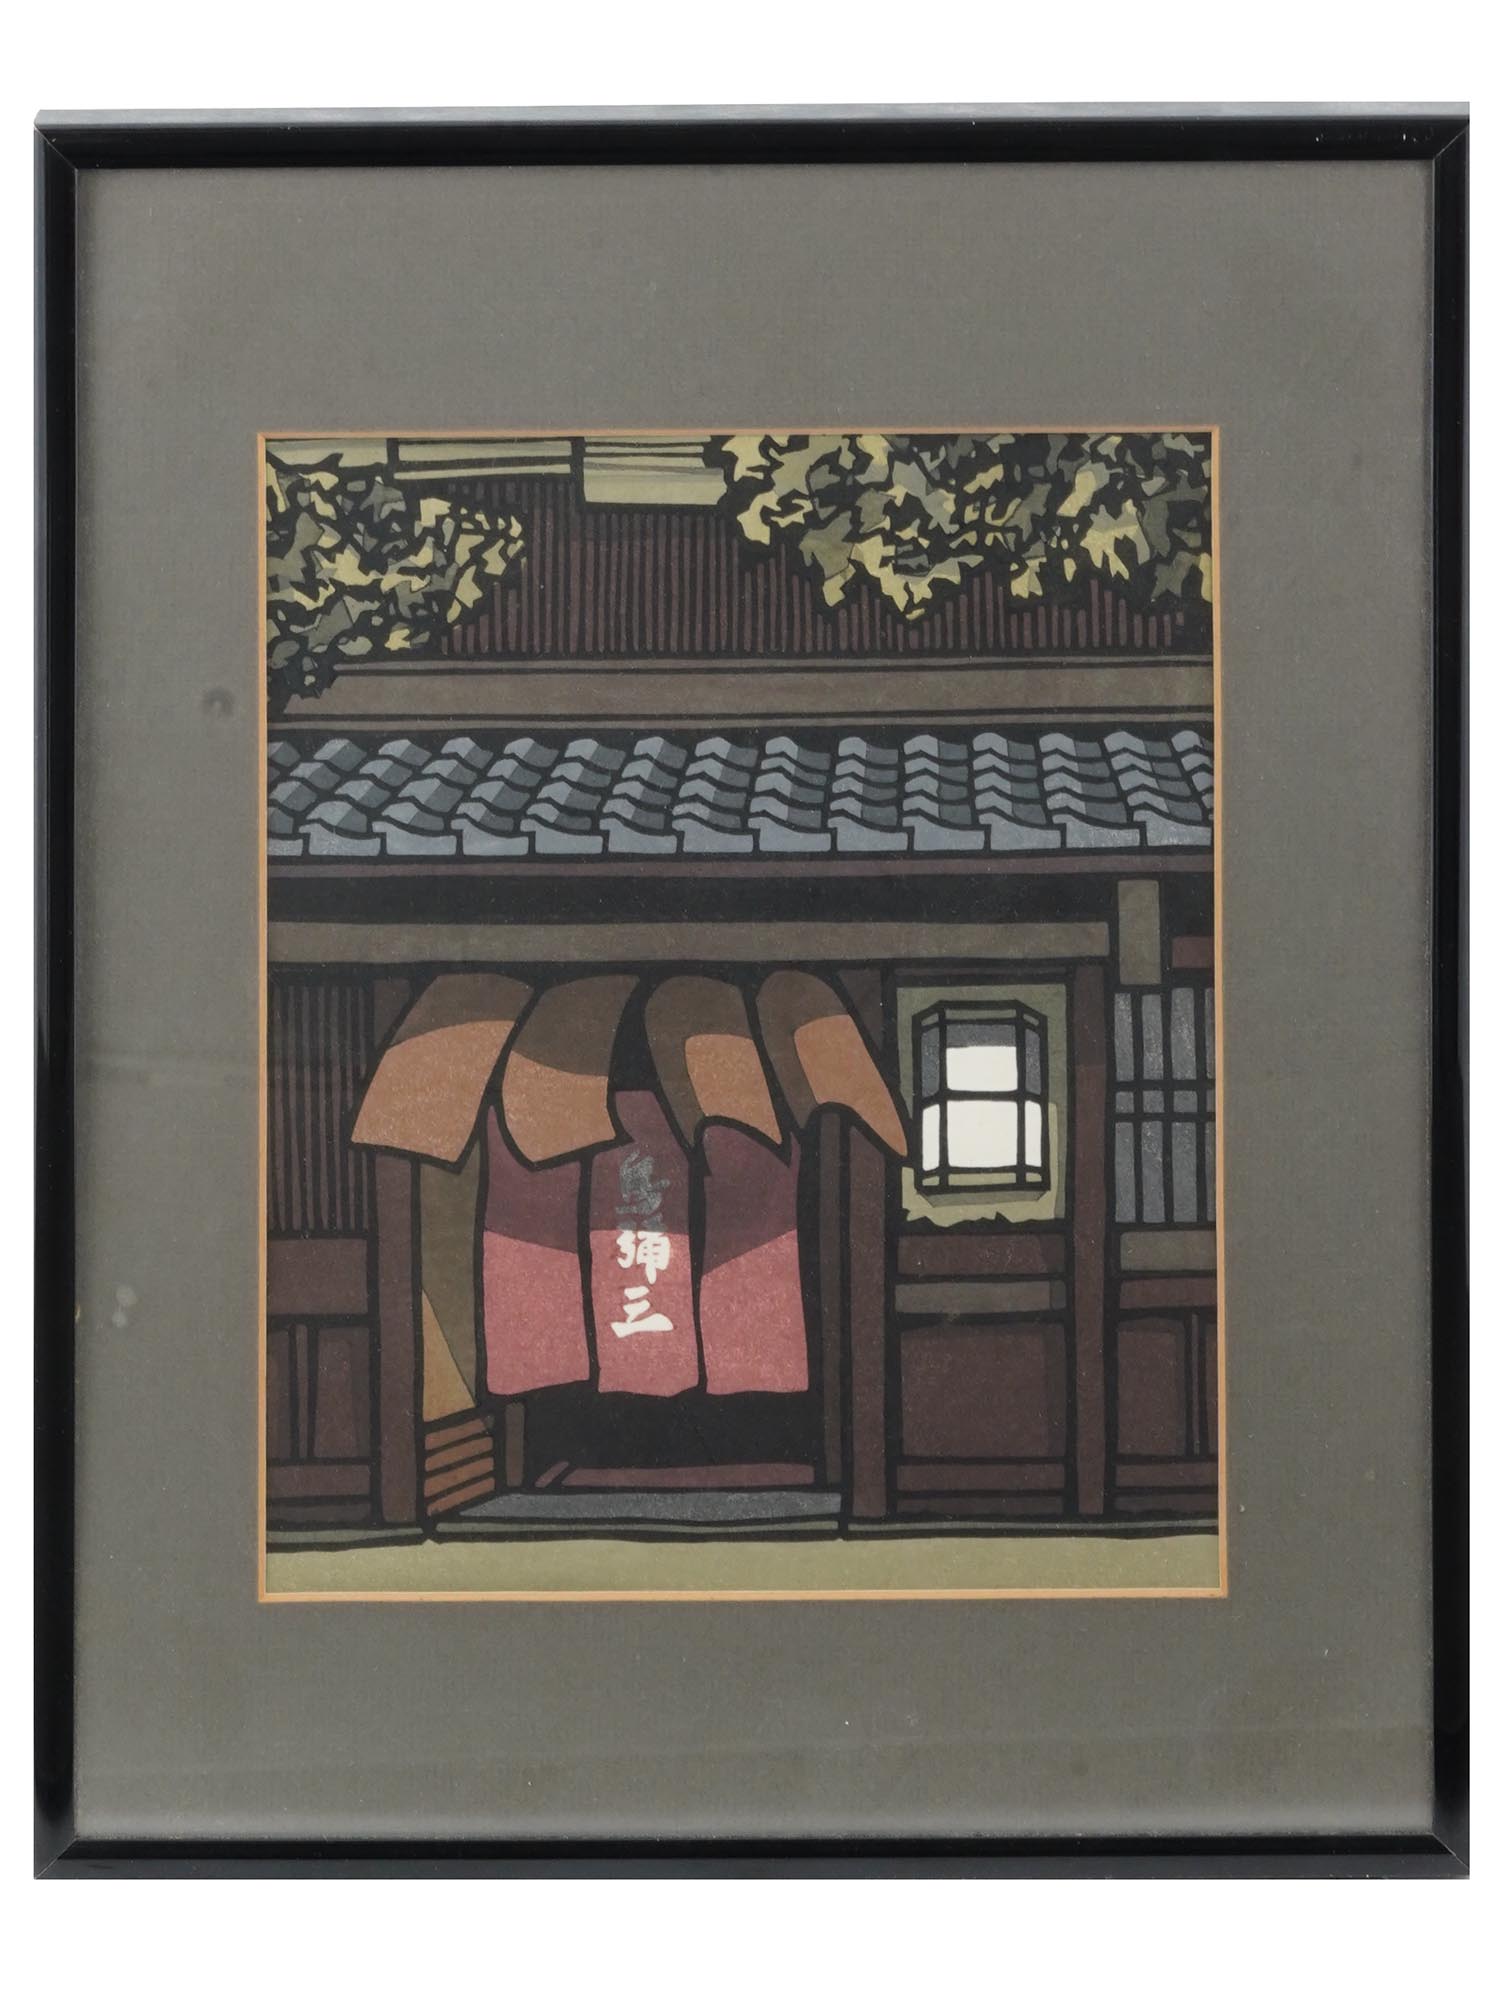 NISHIJIMA KATSUYUKI ORIGINAL JAPANESE WOODBLOCK PRINT PIC-0